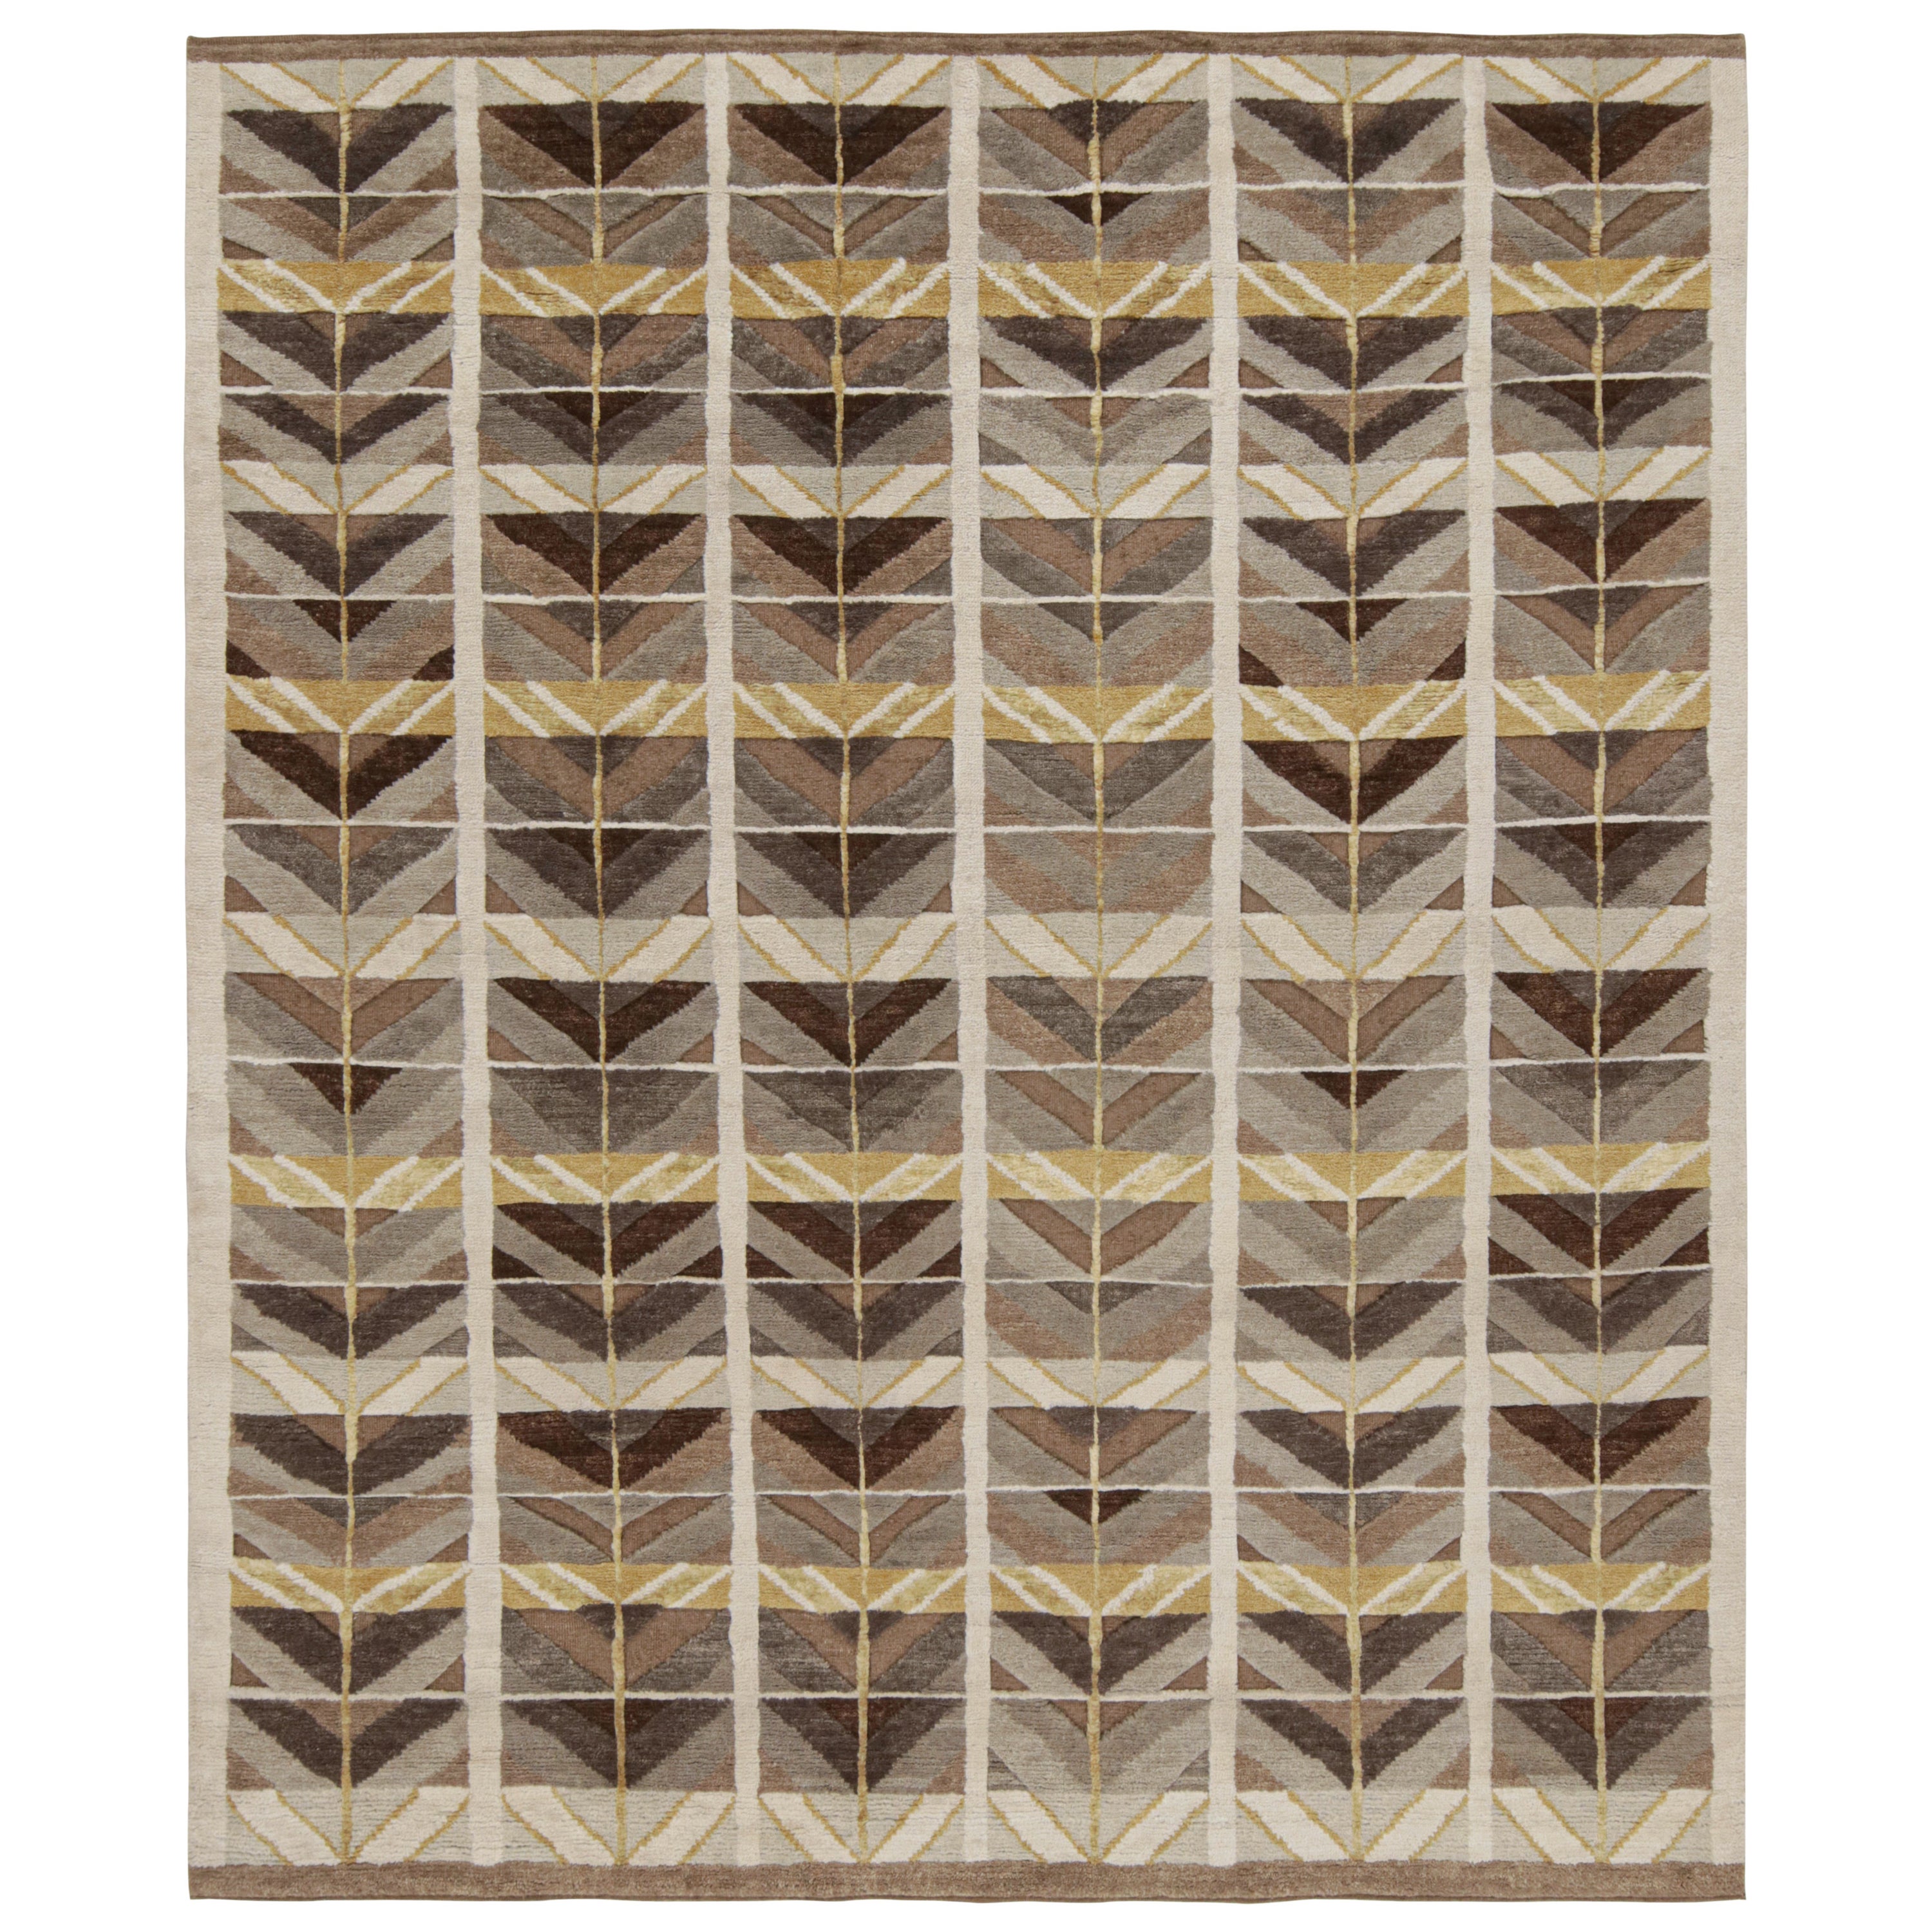 Rug & Kilim's hoher Teppich im skandinavischen Stil mit geometrischen Mustern